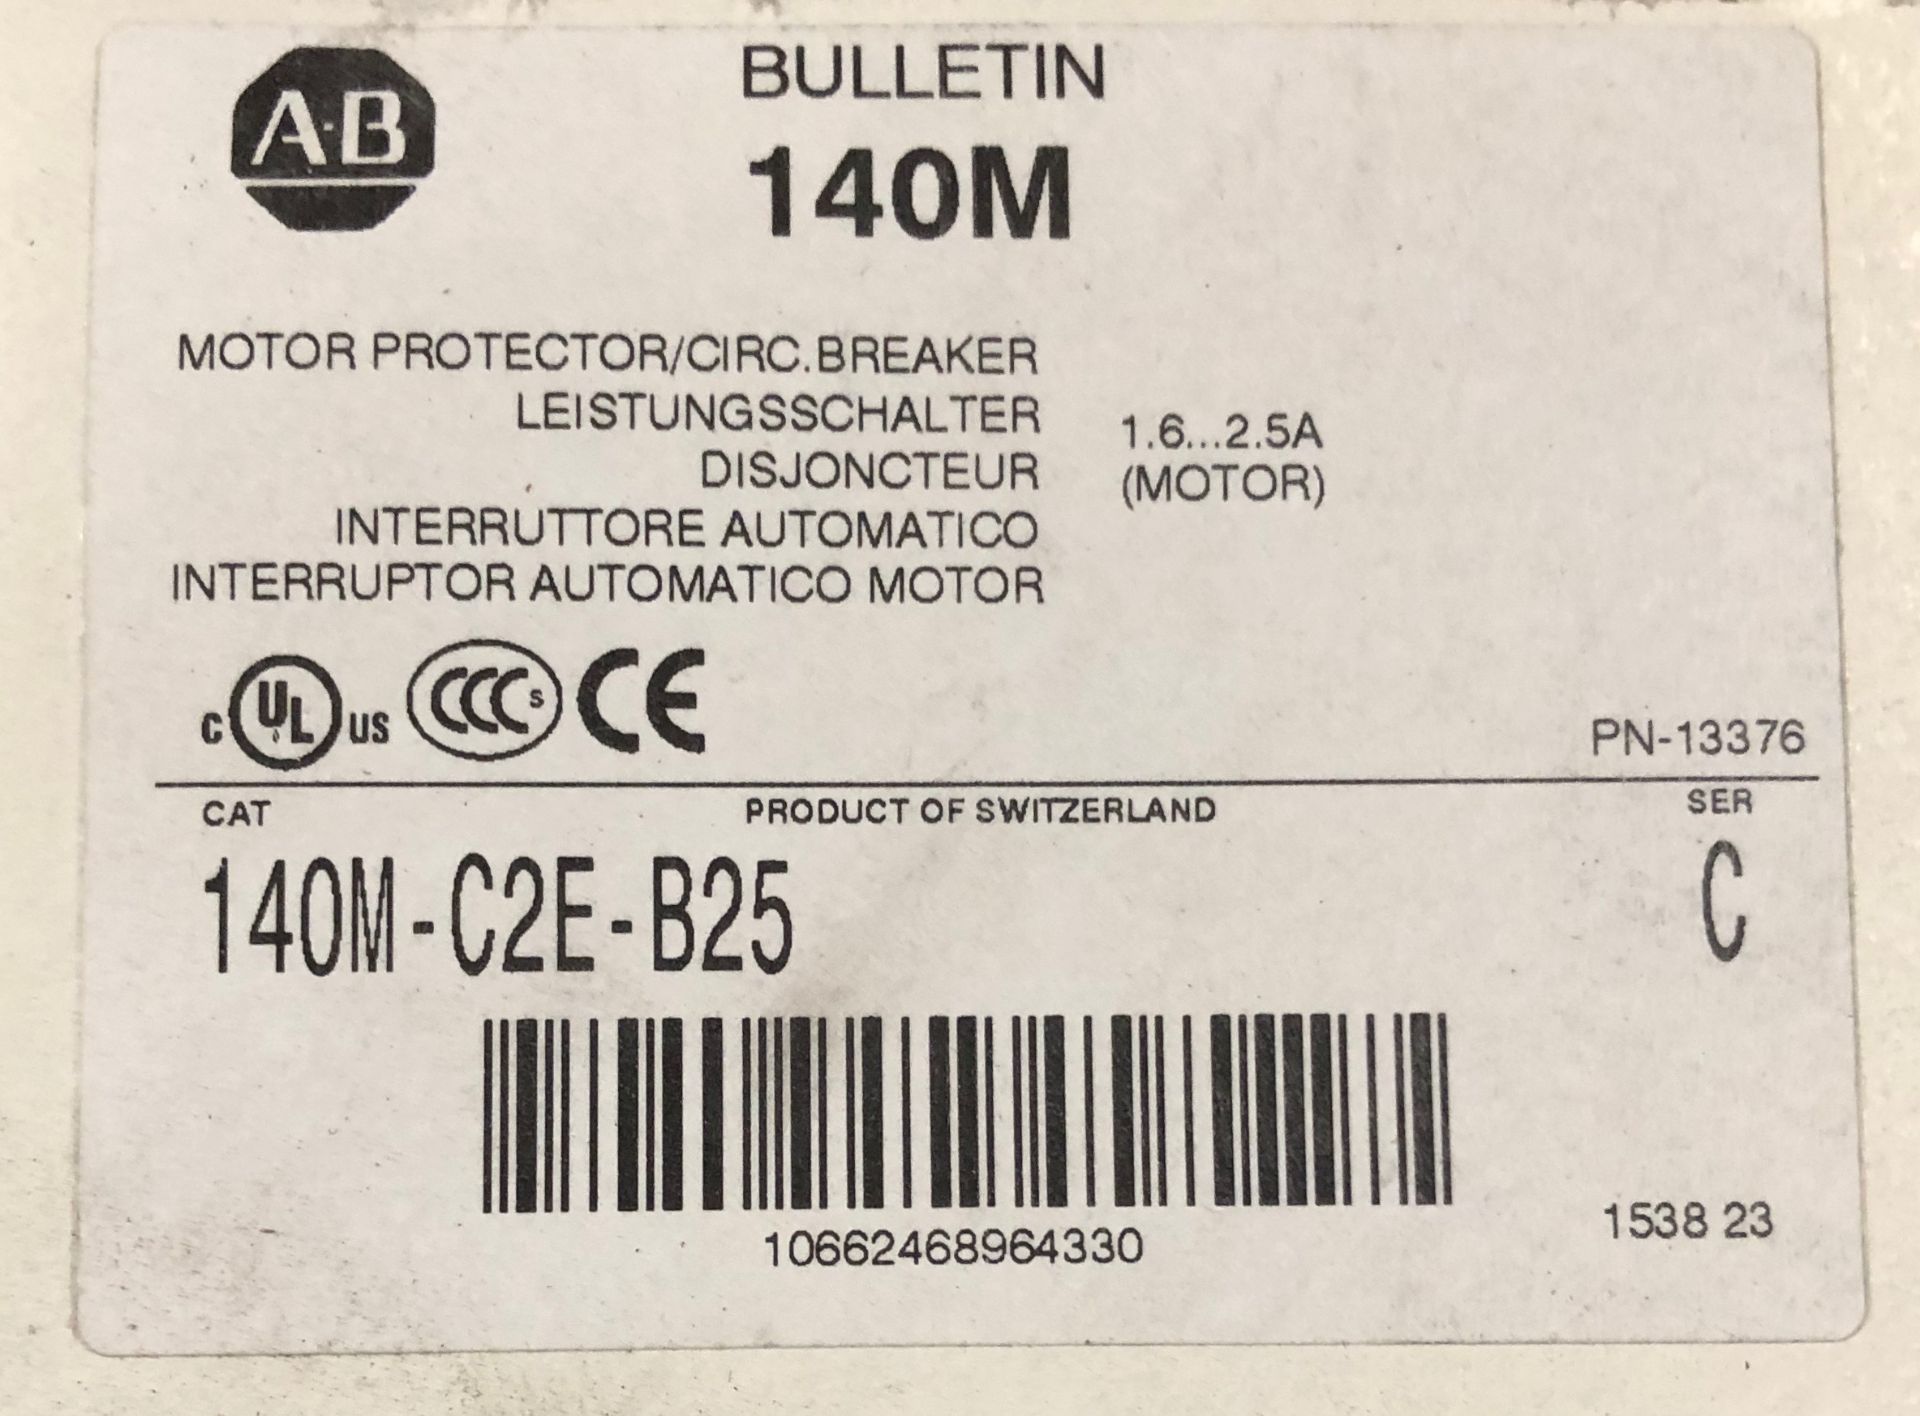 AB Allen Bradley Bulletin 140M Cat # 140M-C2E-B25 Motor Protection Breaker 1.6-2.5 Amp C Frame 3 - Image 2 of 2